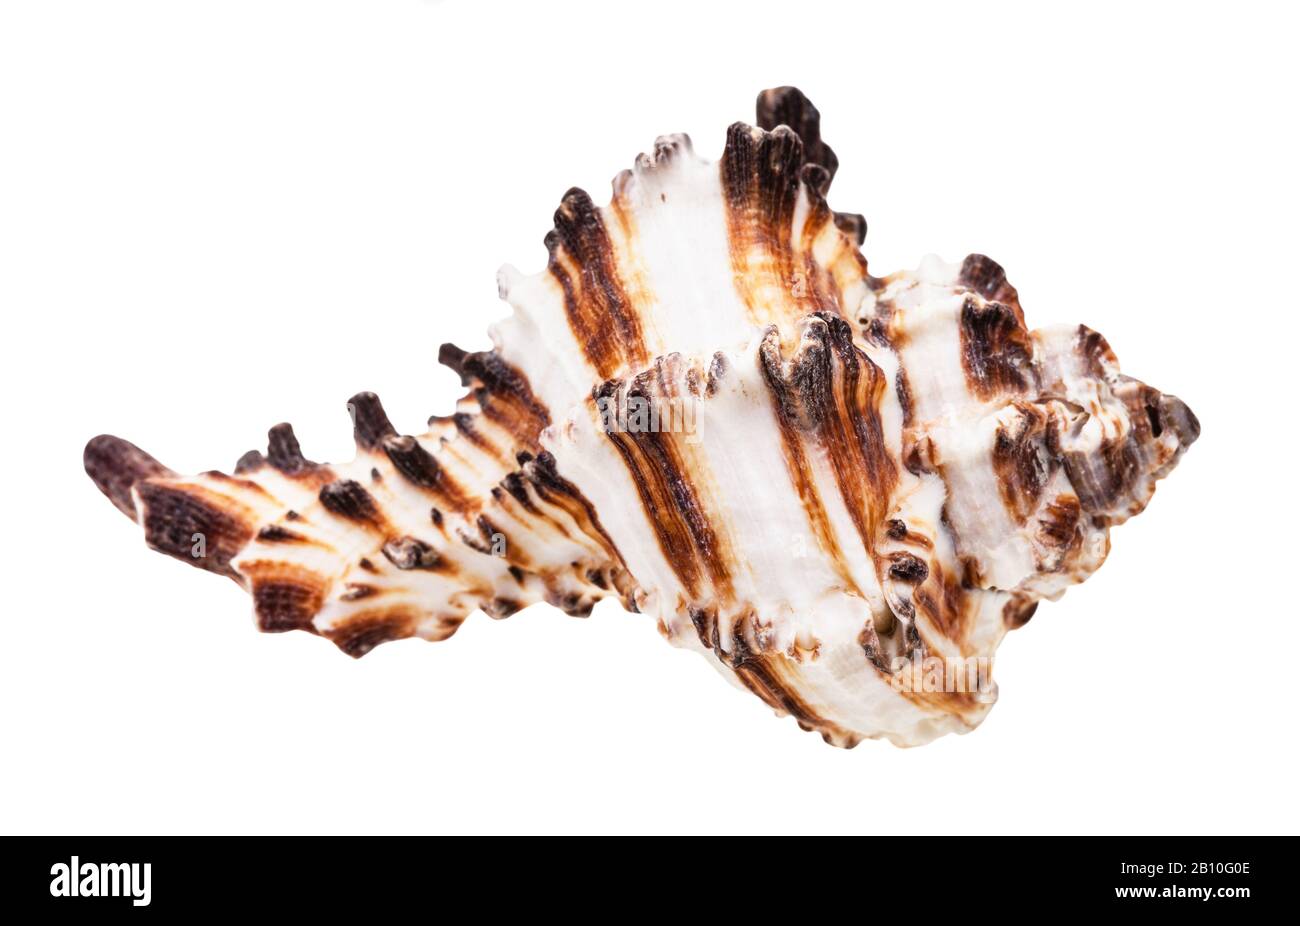 conchiglia bruna striata di muricidae mollusco isolato su sfondo bianco Foto Stock